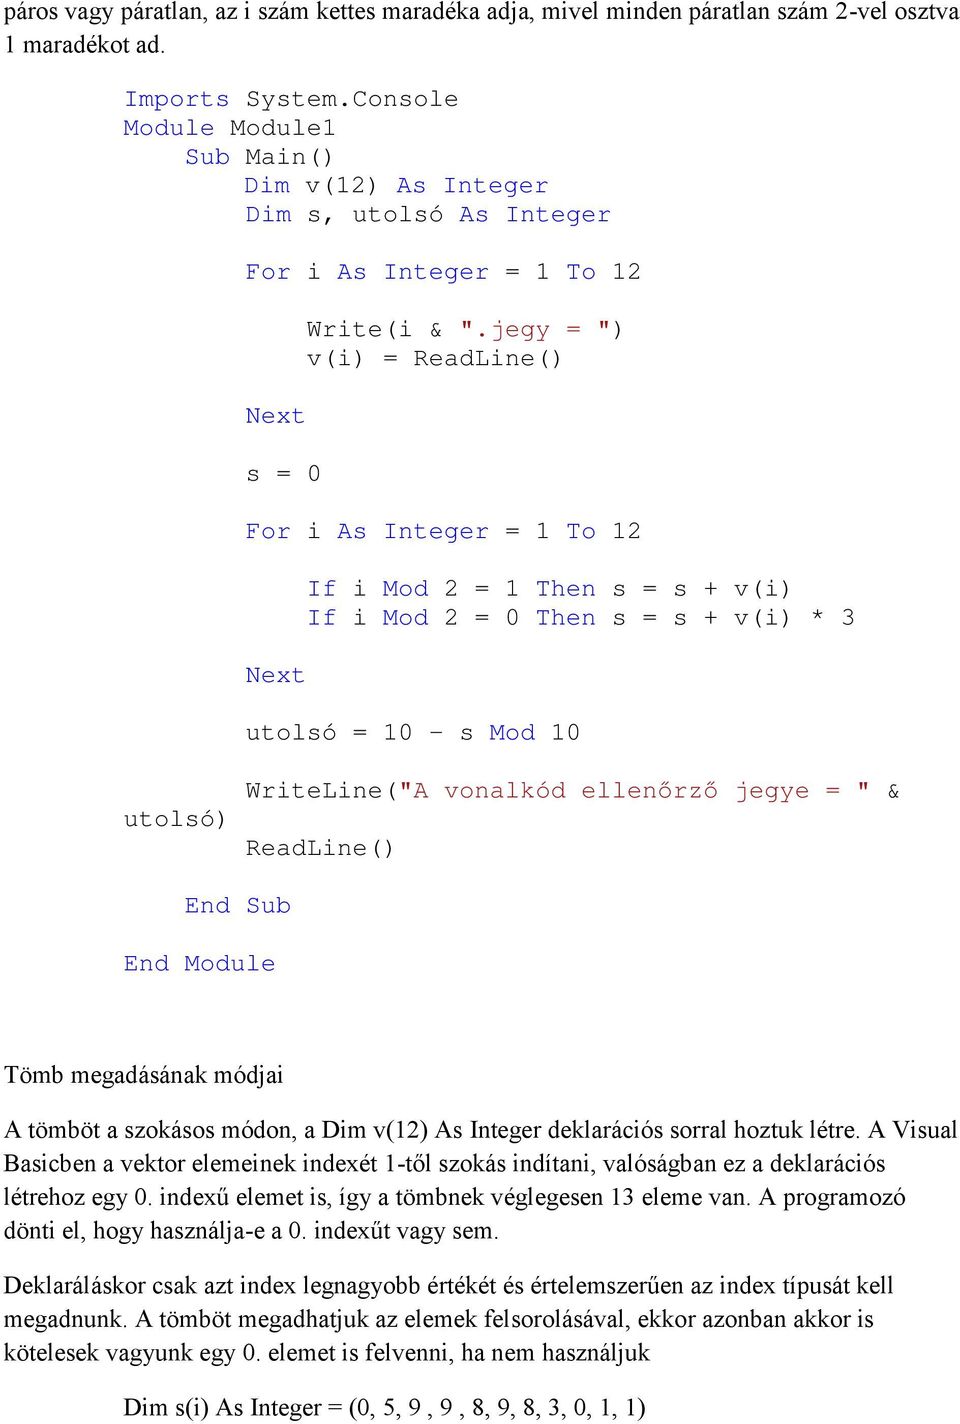 jegy = ") v(i) = ReadLine() For i As Integer = 1 To 12 Next If i Mod 2 = 1 Then s = s + v(i) If i Mod 2 = 0 Then s = s + v(i) * 3 utolsó = 10 - s Mod 10 utolsó) WriteLine("A vonalkód ellenőrző jegye